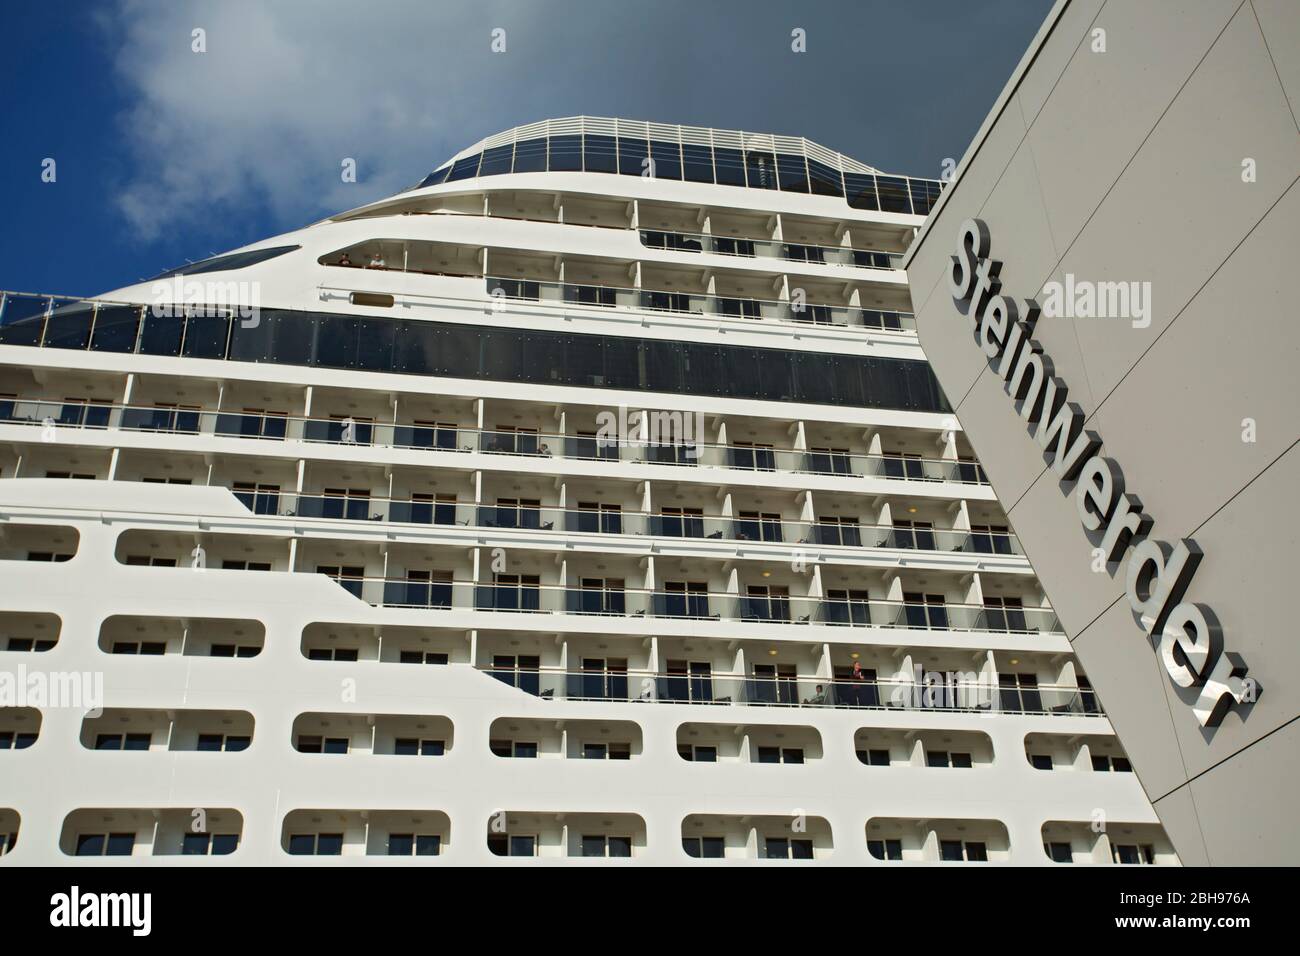 MSC preziosa al terminal delle navi da crociera Steinwerder nel porto di Amburgo. Foto Stock